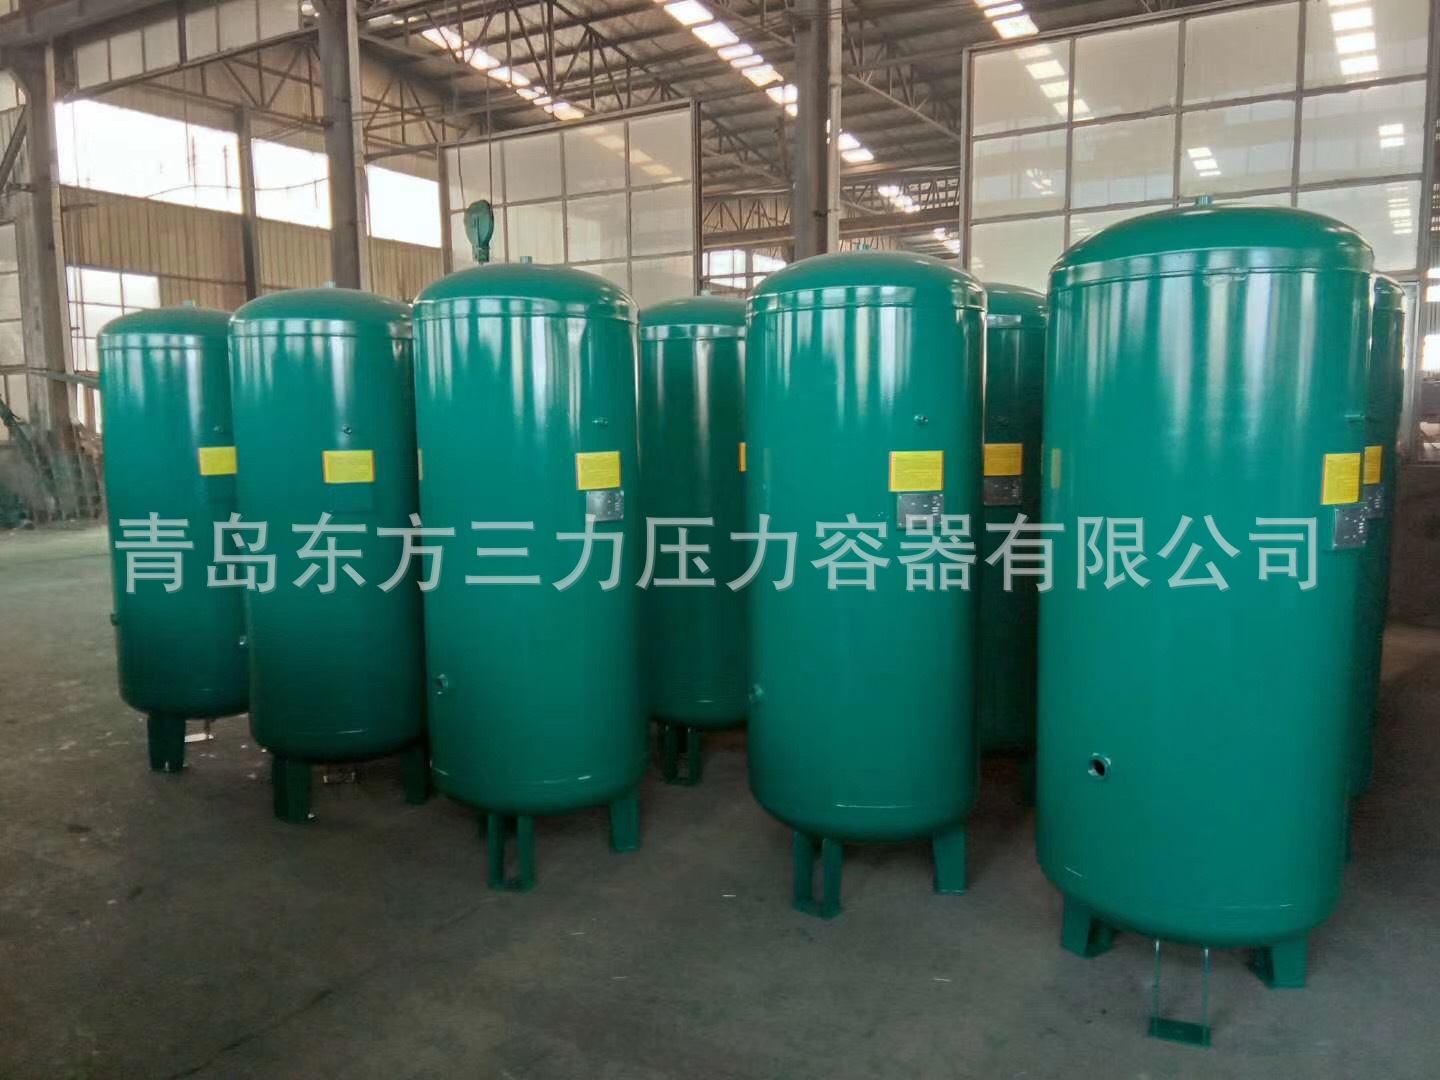 压缩空气储气罐6立方米 10kg空压机气罐 压力容器生产厂家直销示例图22